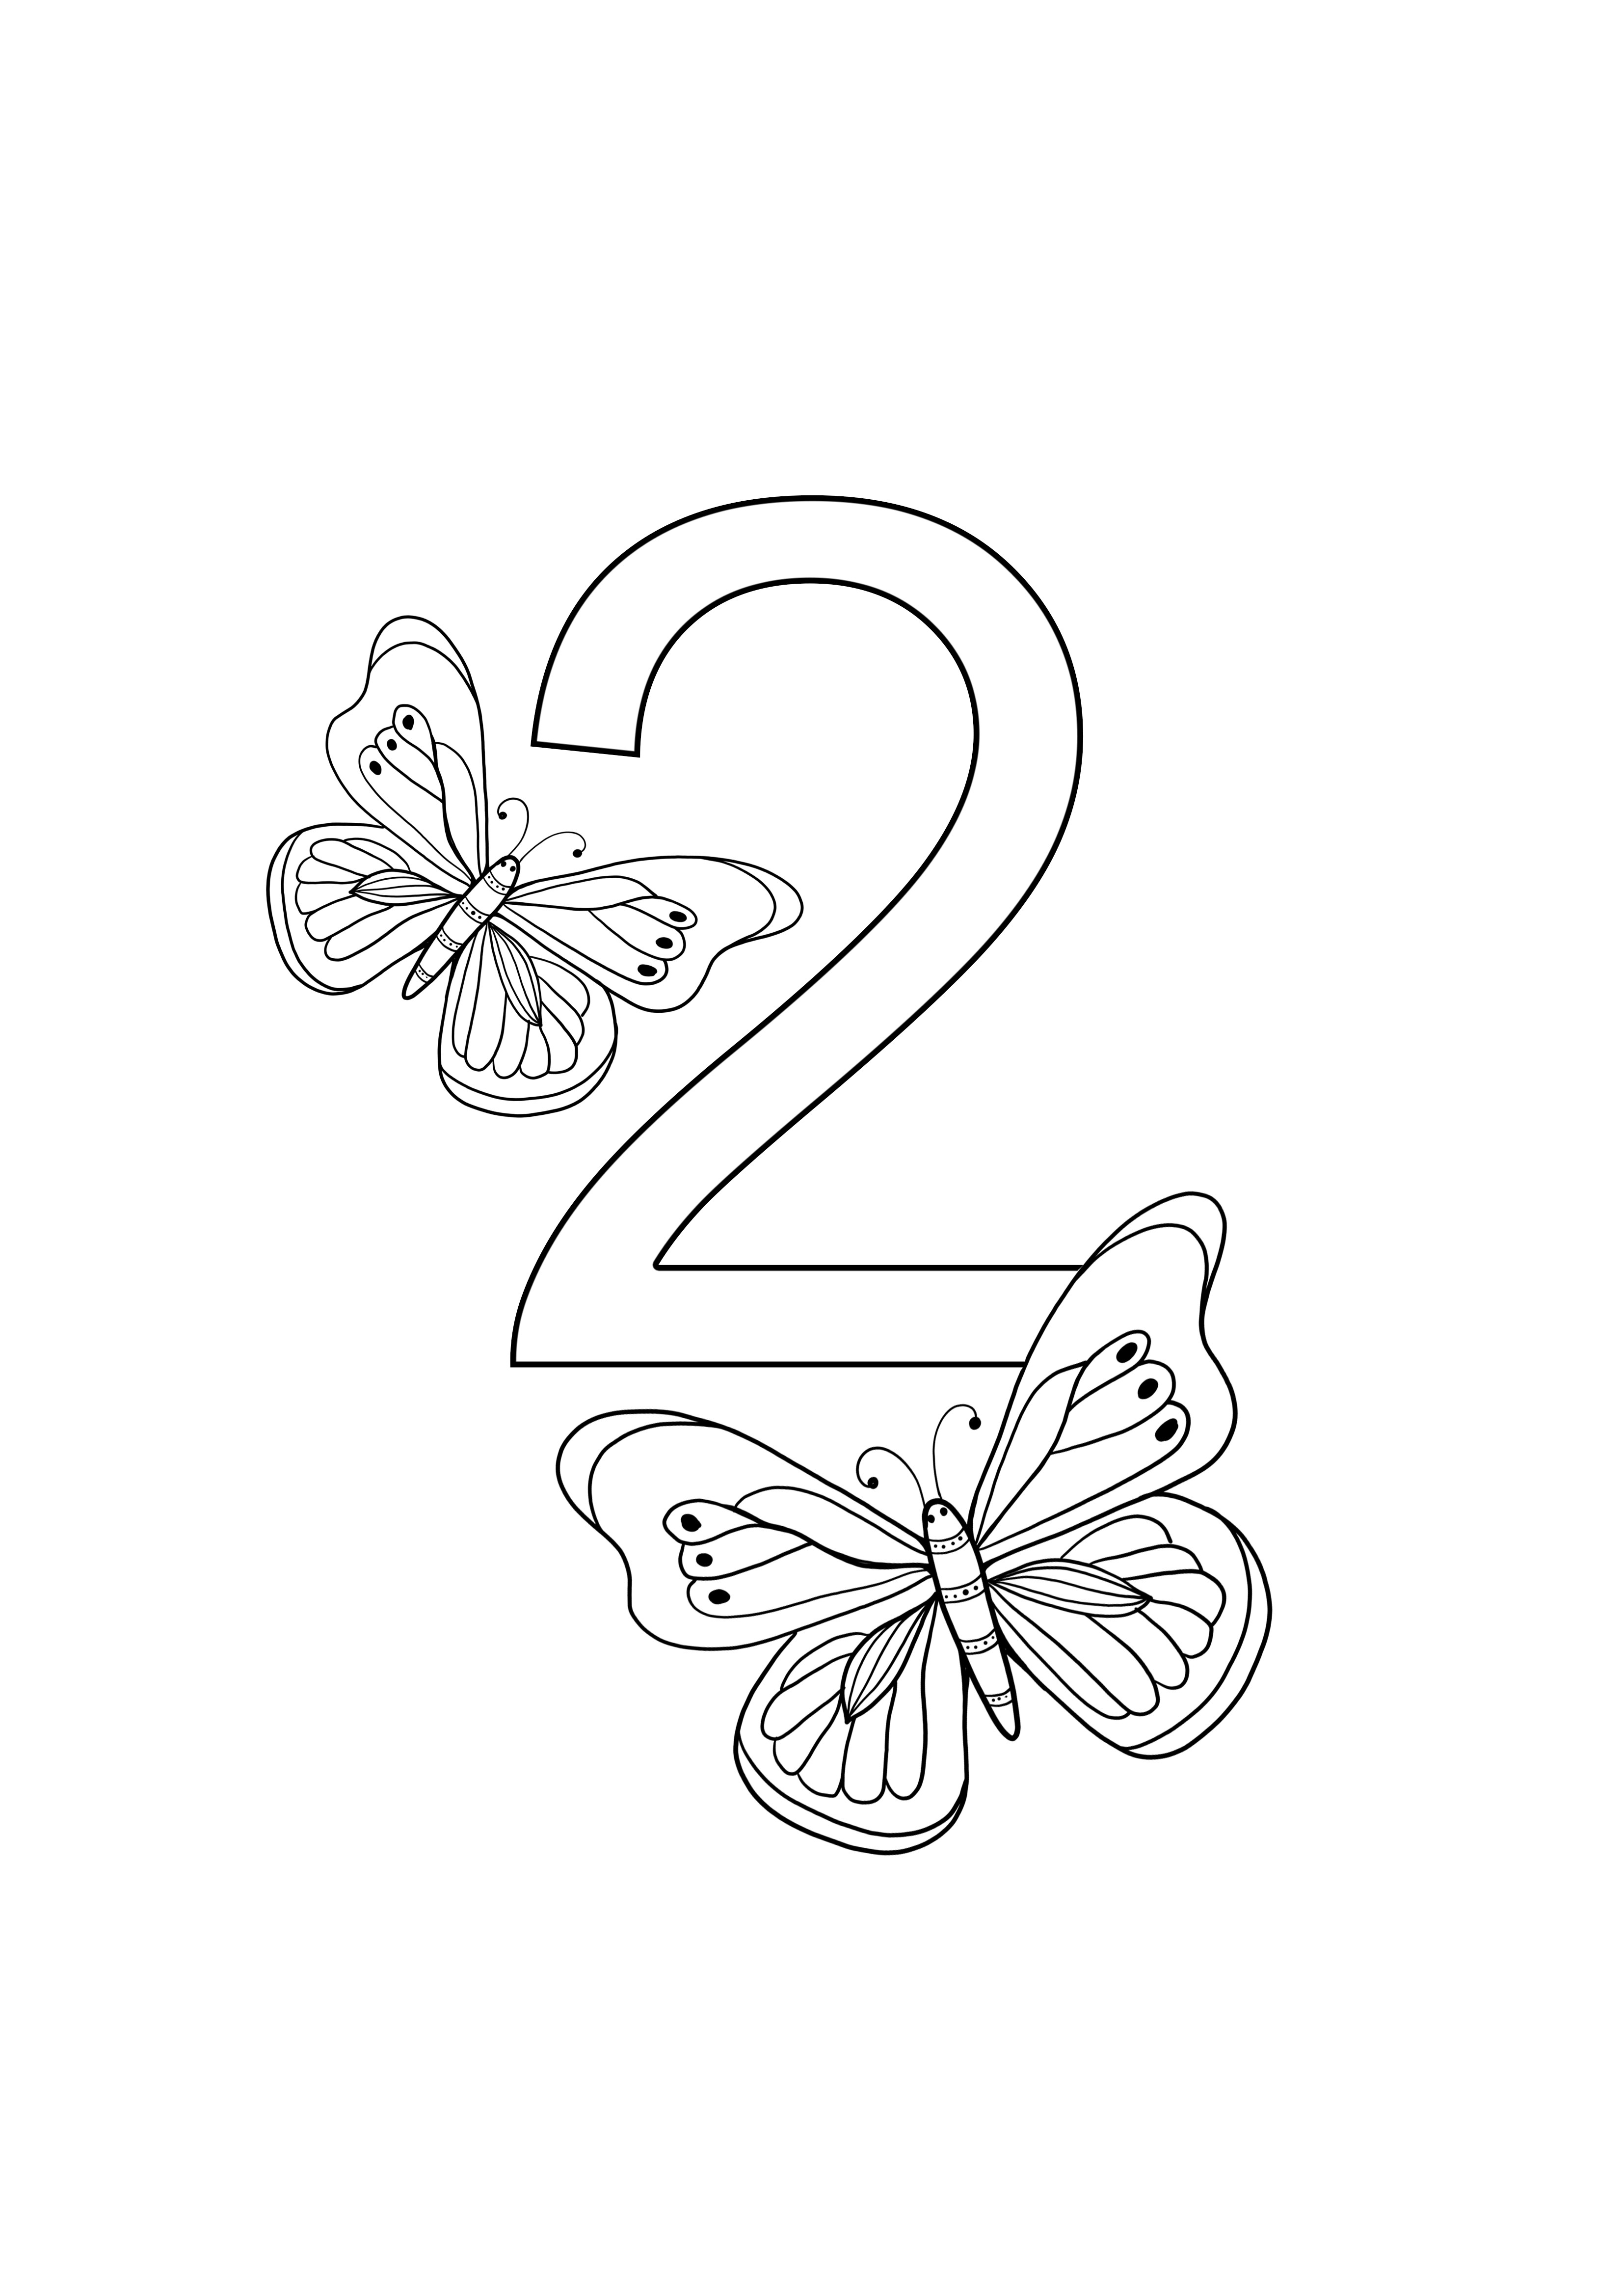 iki kelebek numarası boyama sayfası ve ücretsiz baskı